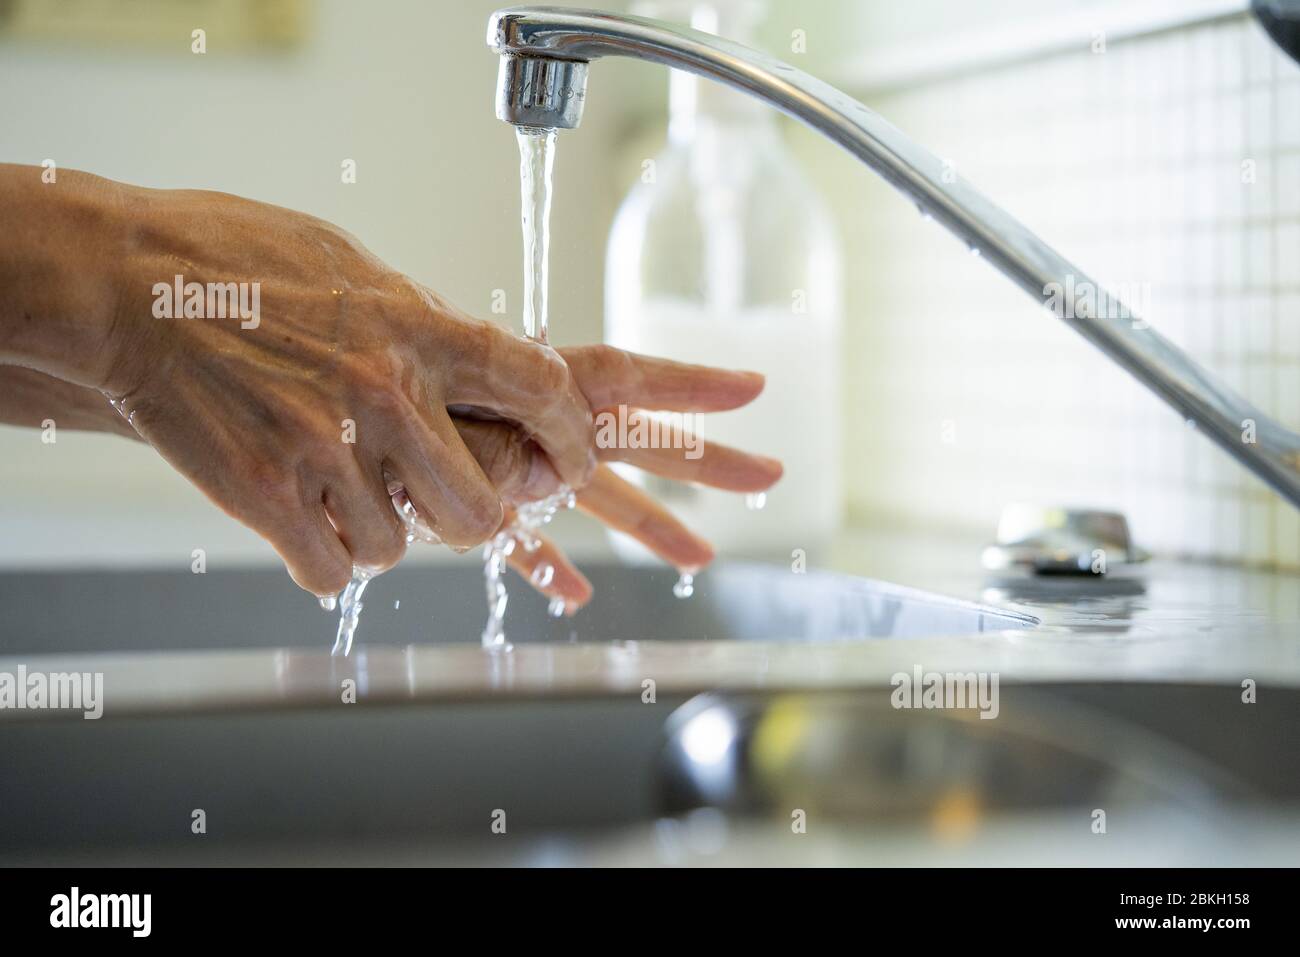 Uomo lavando le mani con acqua nel lavandino del bagno Foto Stock